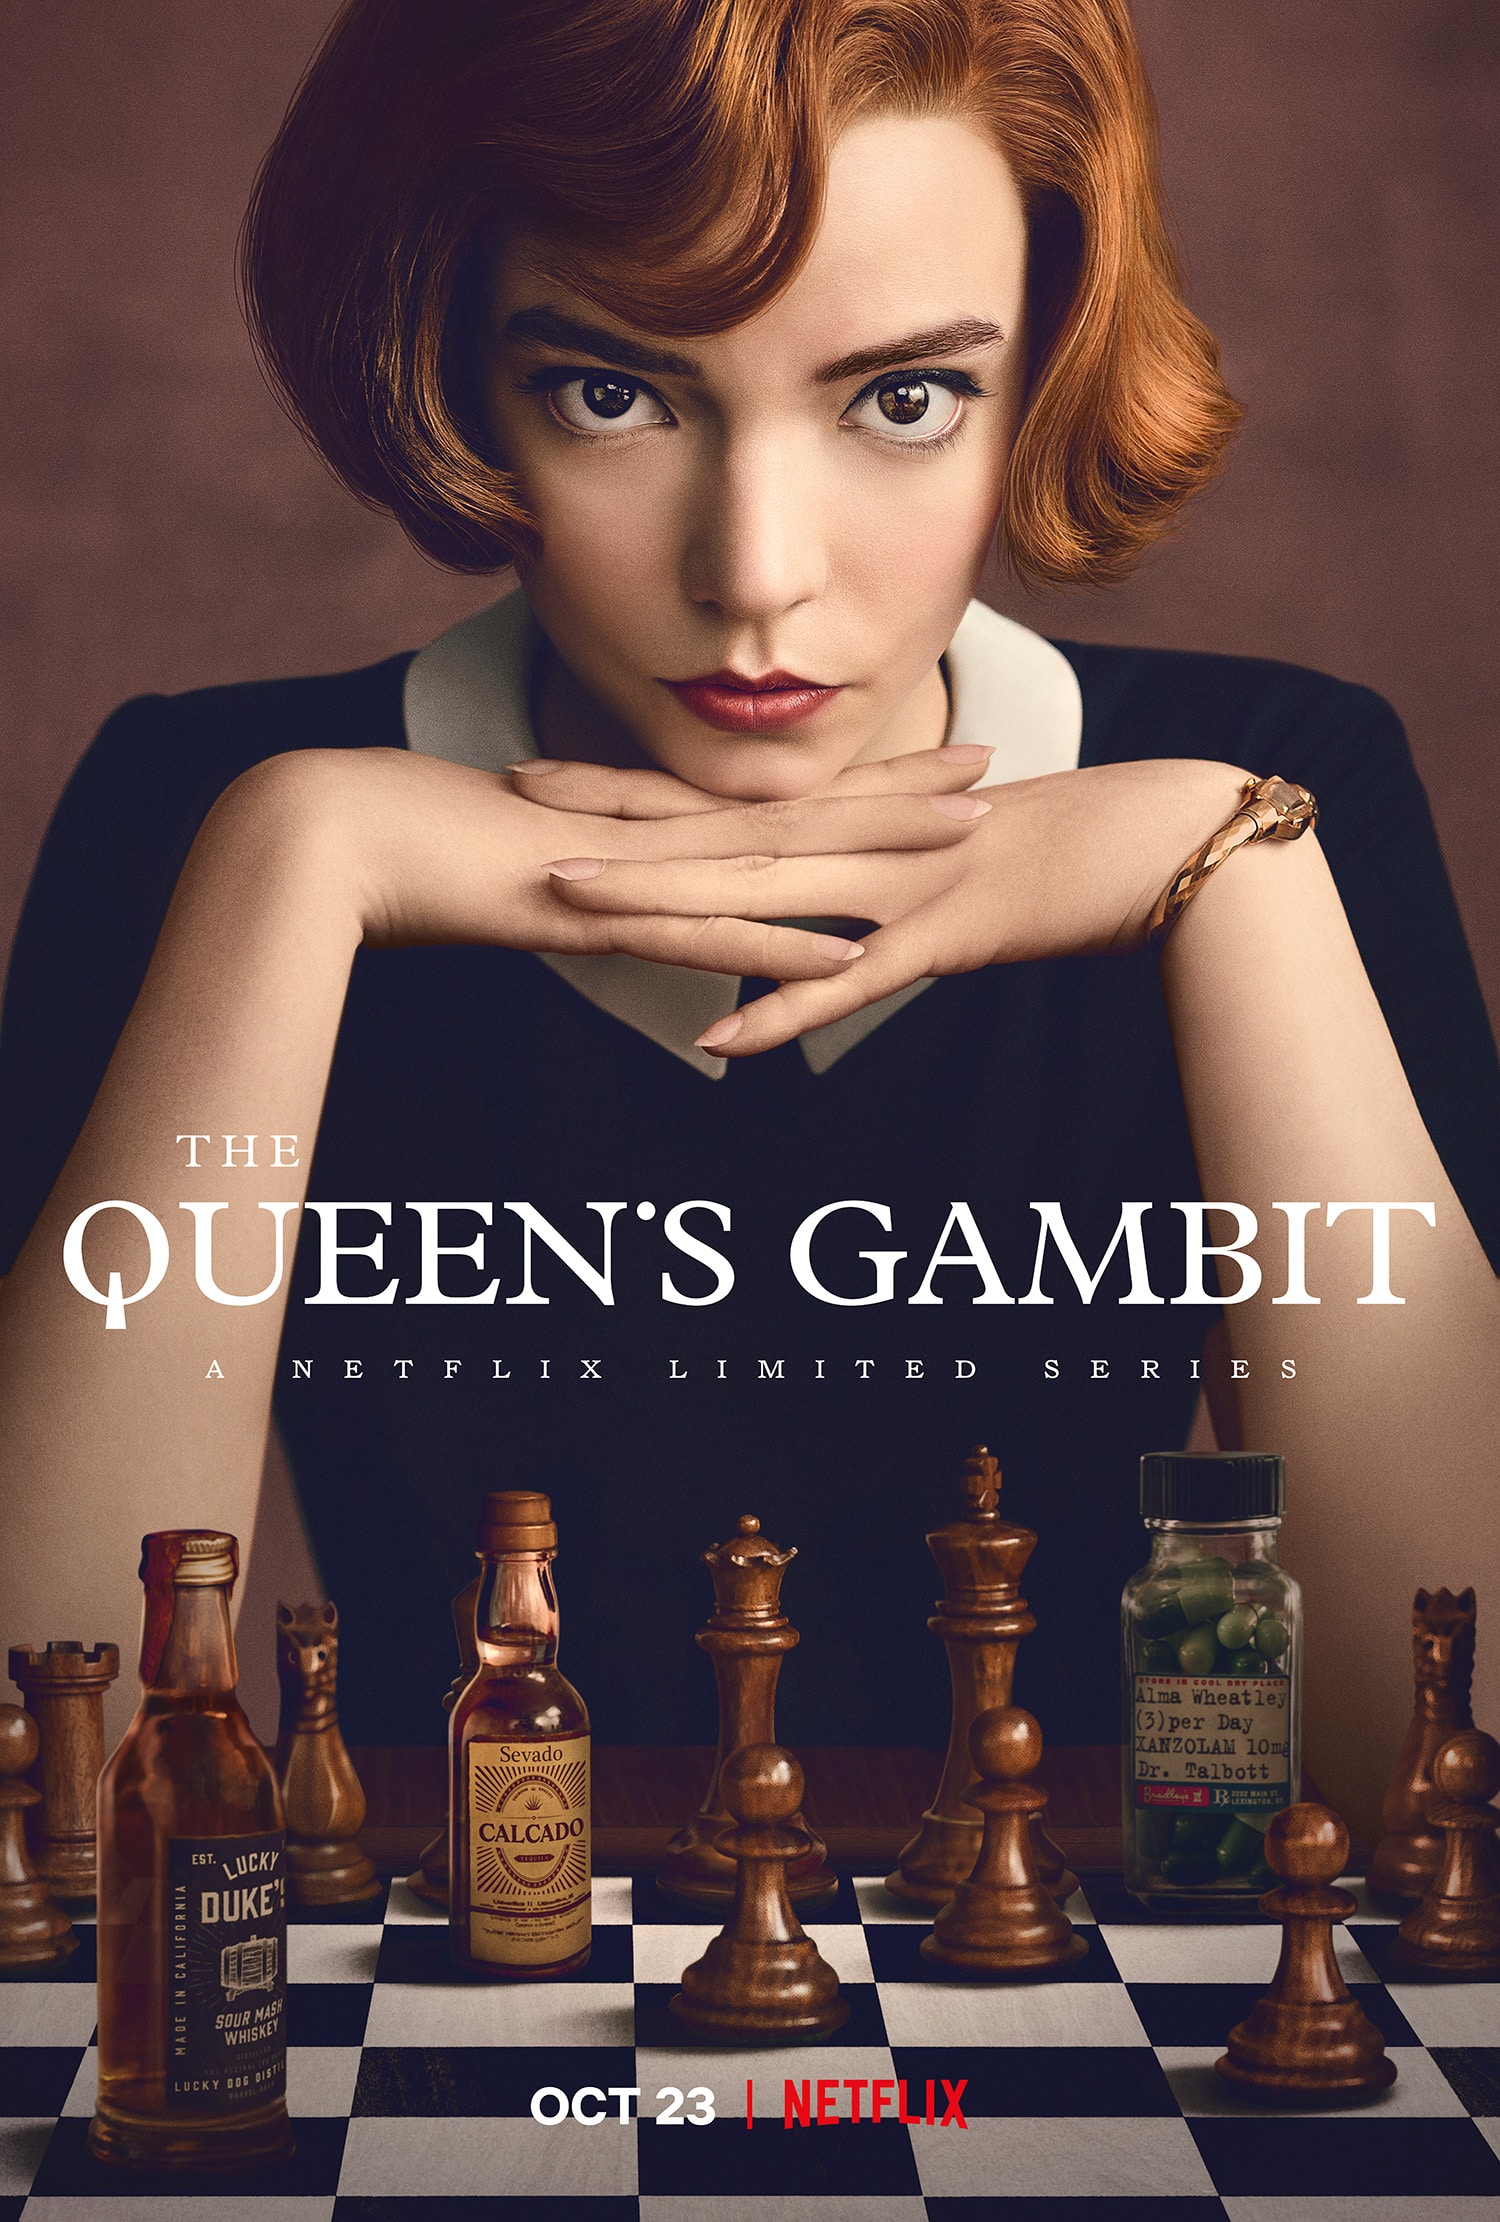 As rainhas do jogo dos reis: conheça as Beth Harmon da vida real